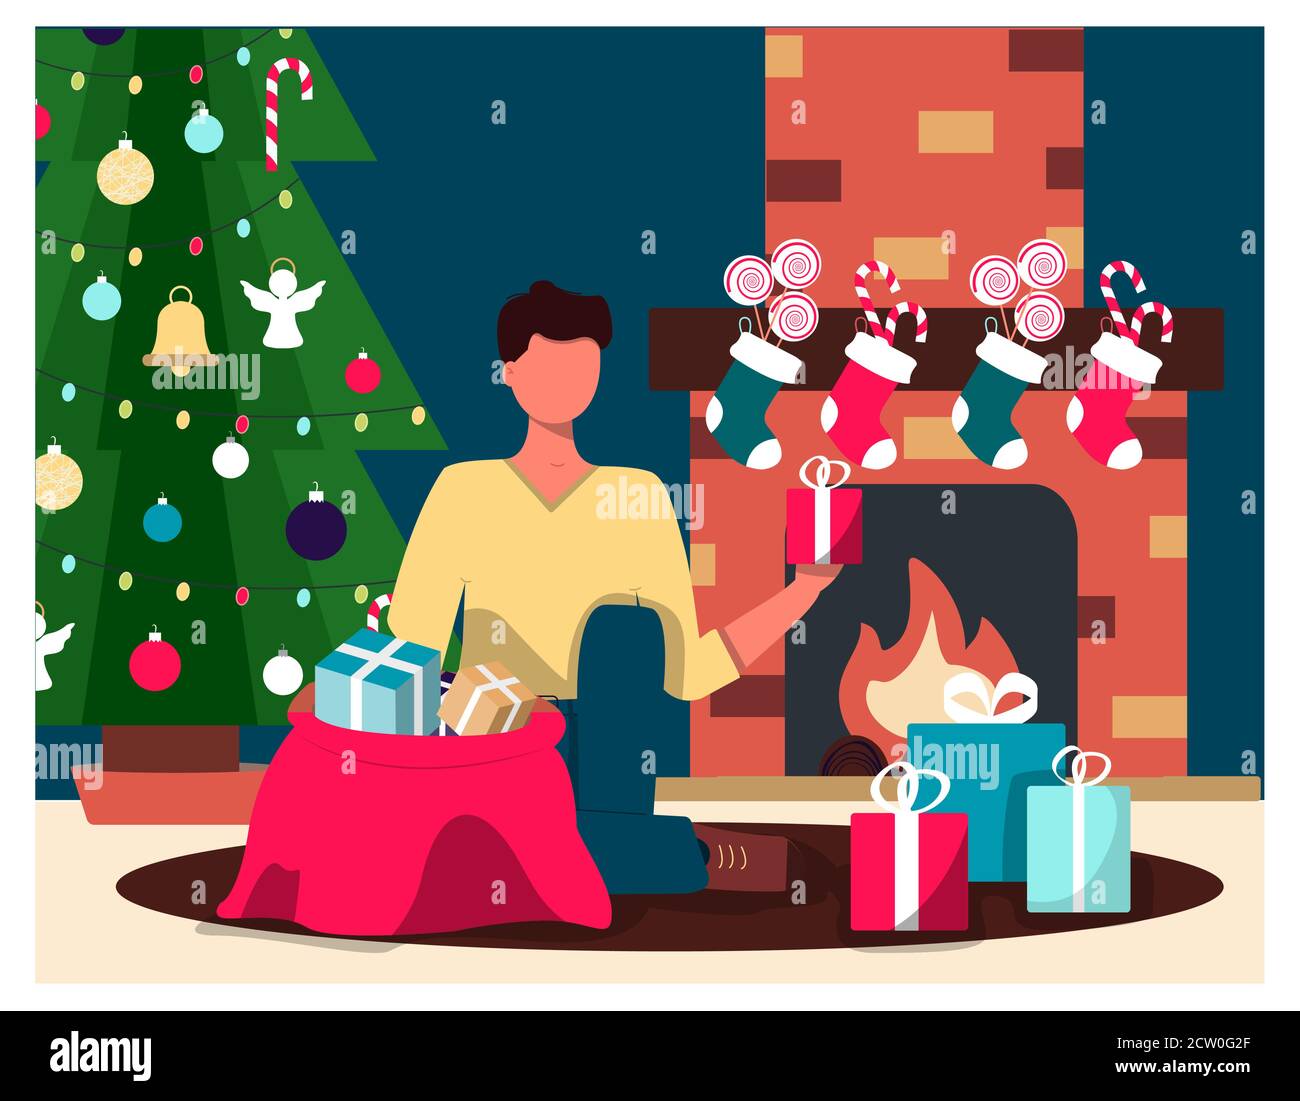 Un uomo sullo sfondo di un albero di Natale e un camino toglie i regali di Natale. Immagine piatta di una cartolina di Natale. Interni accoglienti con decorazioni natalizie. Caminetto con calze e caramelle per le vacanze. Un'illustrazione per un messaggio di saluto, un sito Web del nuovo anno, un'applicazione o un'illustrazione ad.Vector Illustrazione Vettoriale